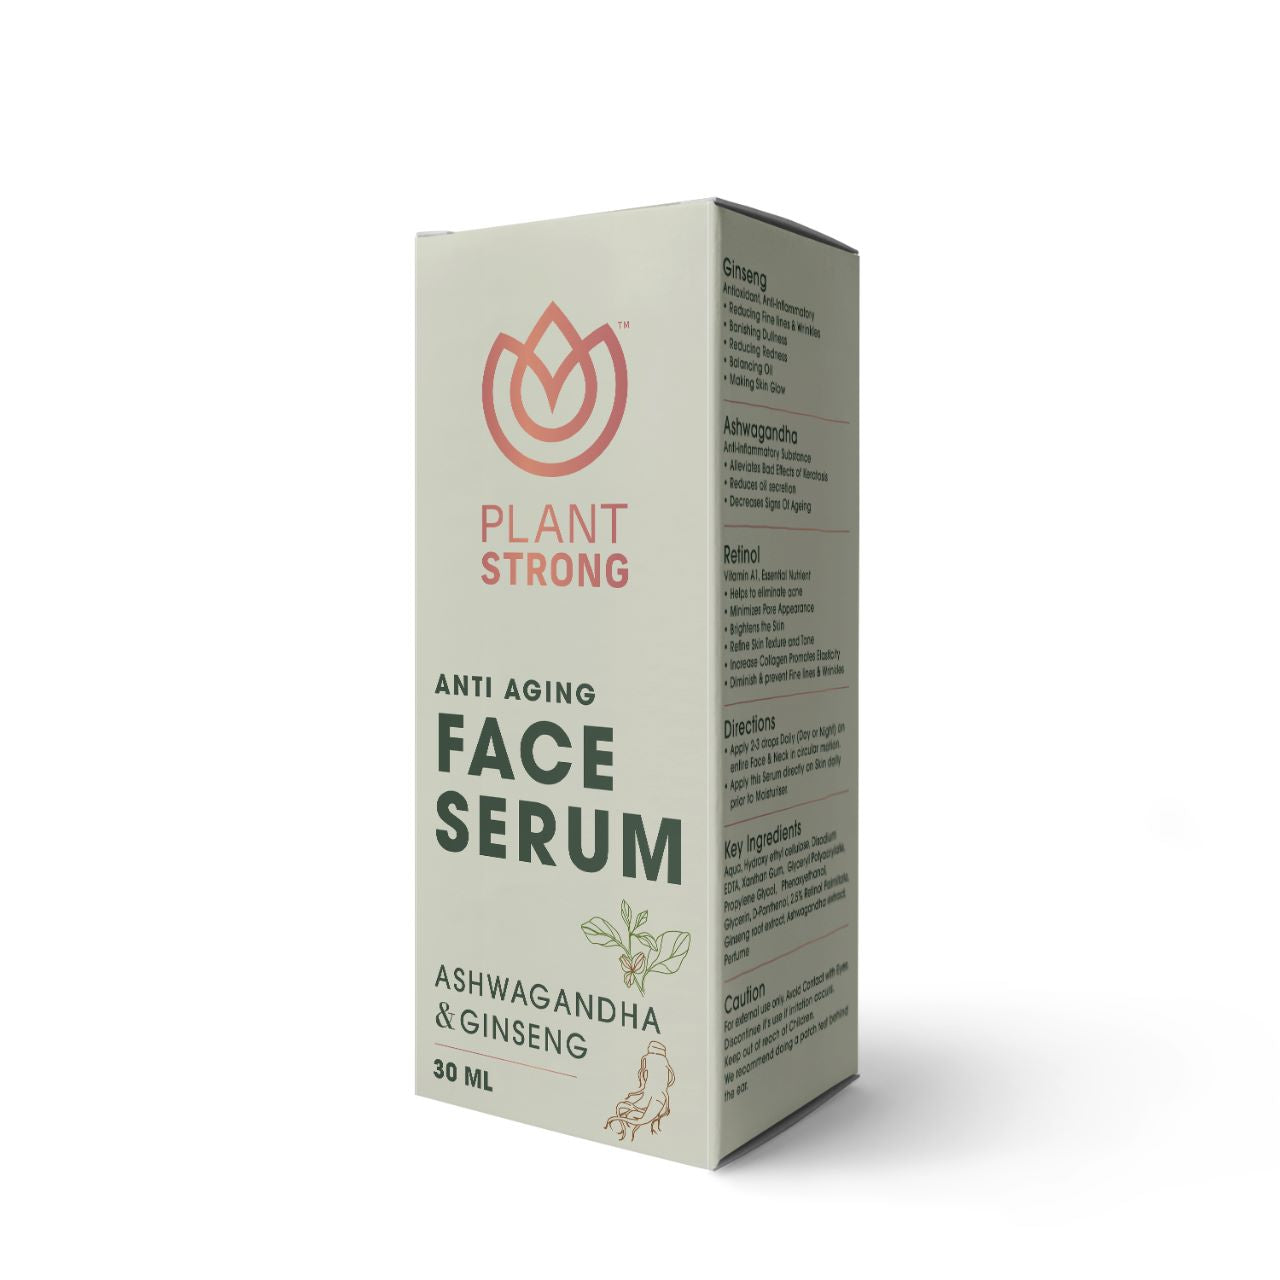 Plant Strong Anti Aging Face Serum | For Men & Women | Ginseng, Ashwagandha | Reduces Fine Lines & Wrinkles | Retinol | 30 ml